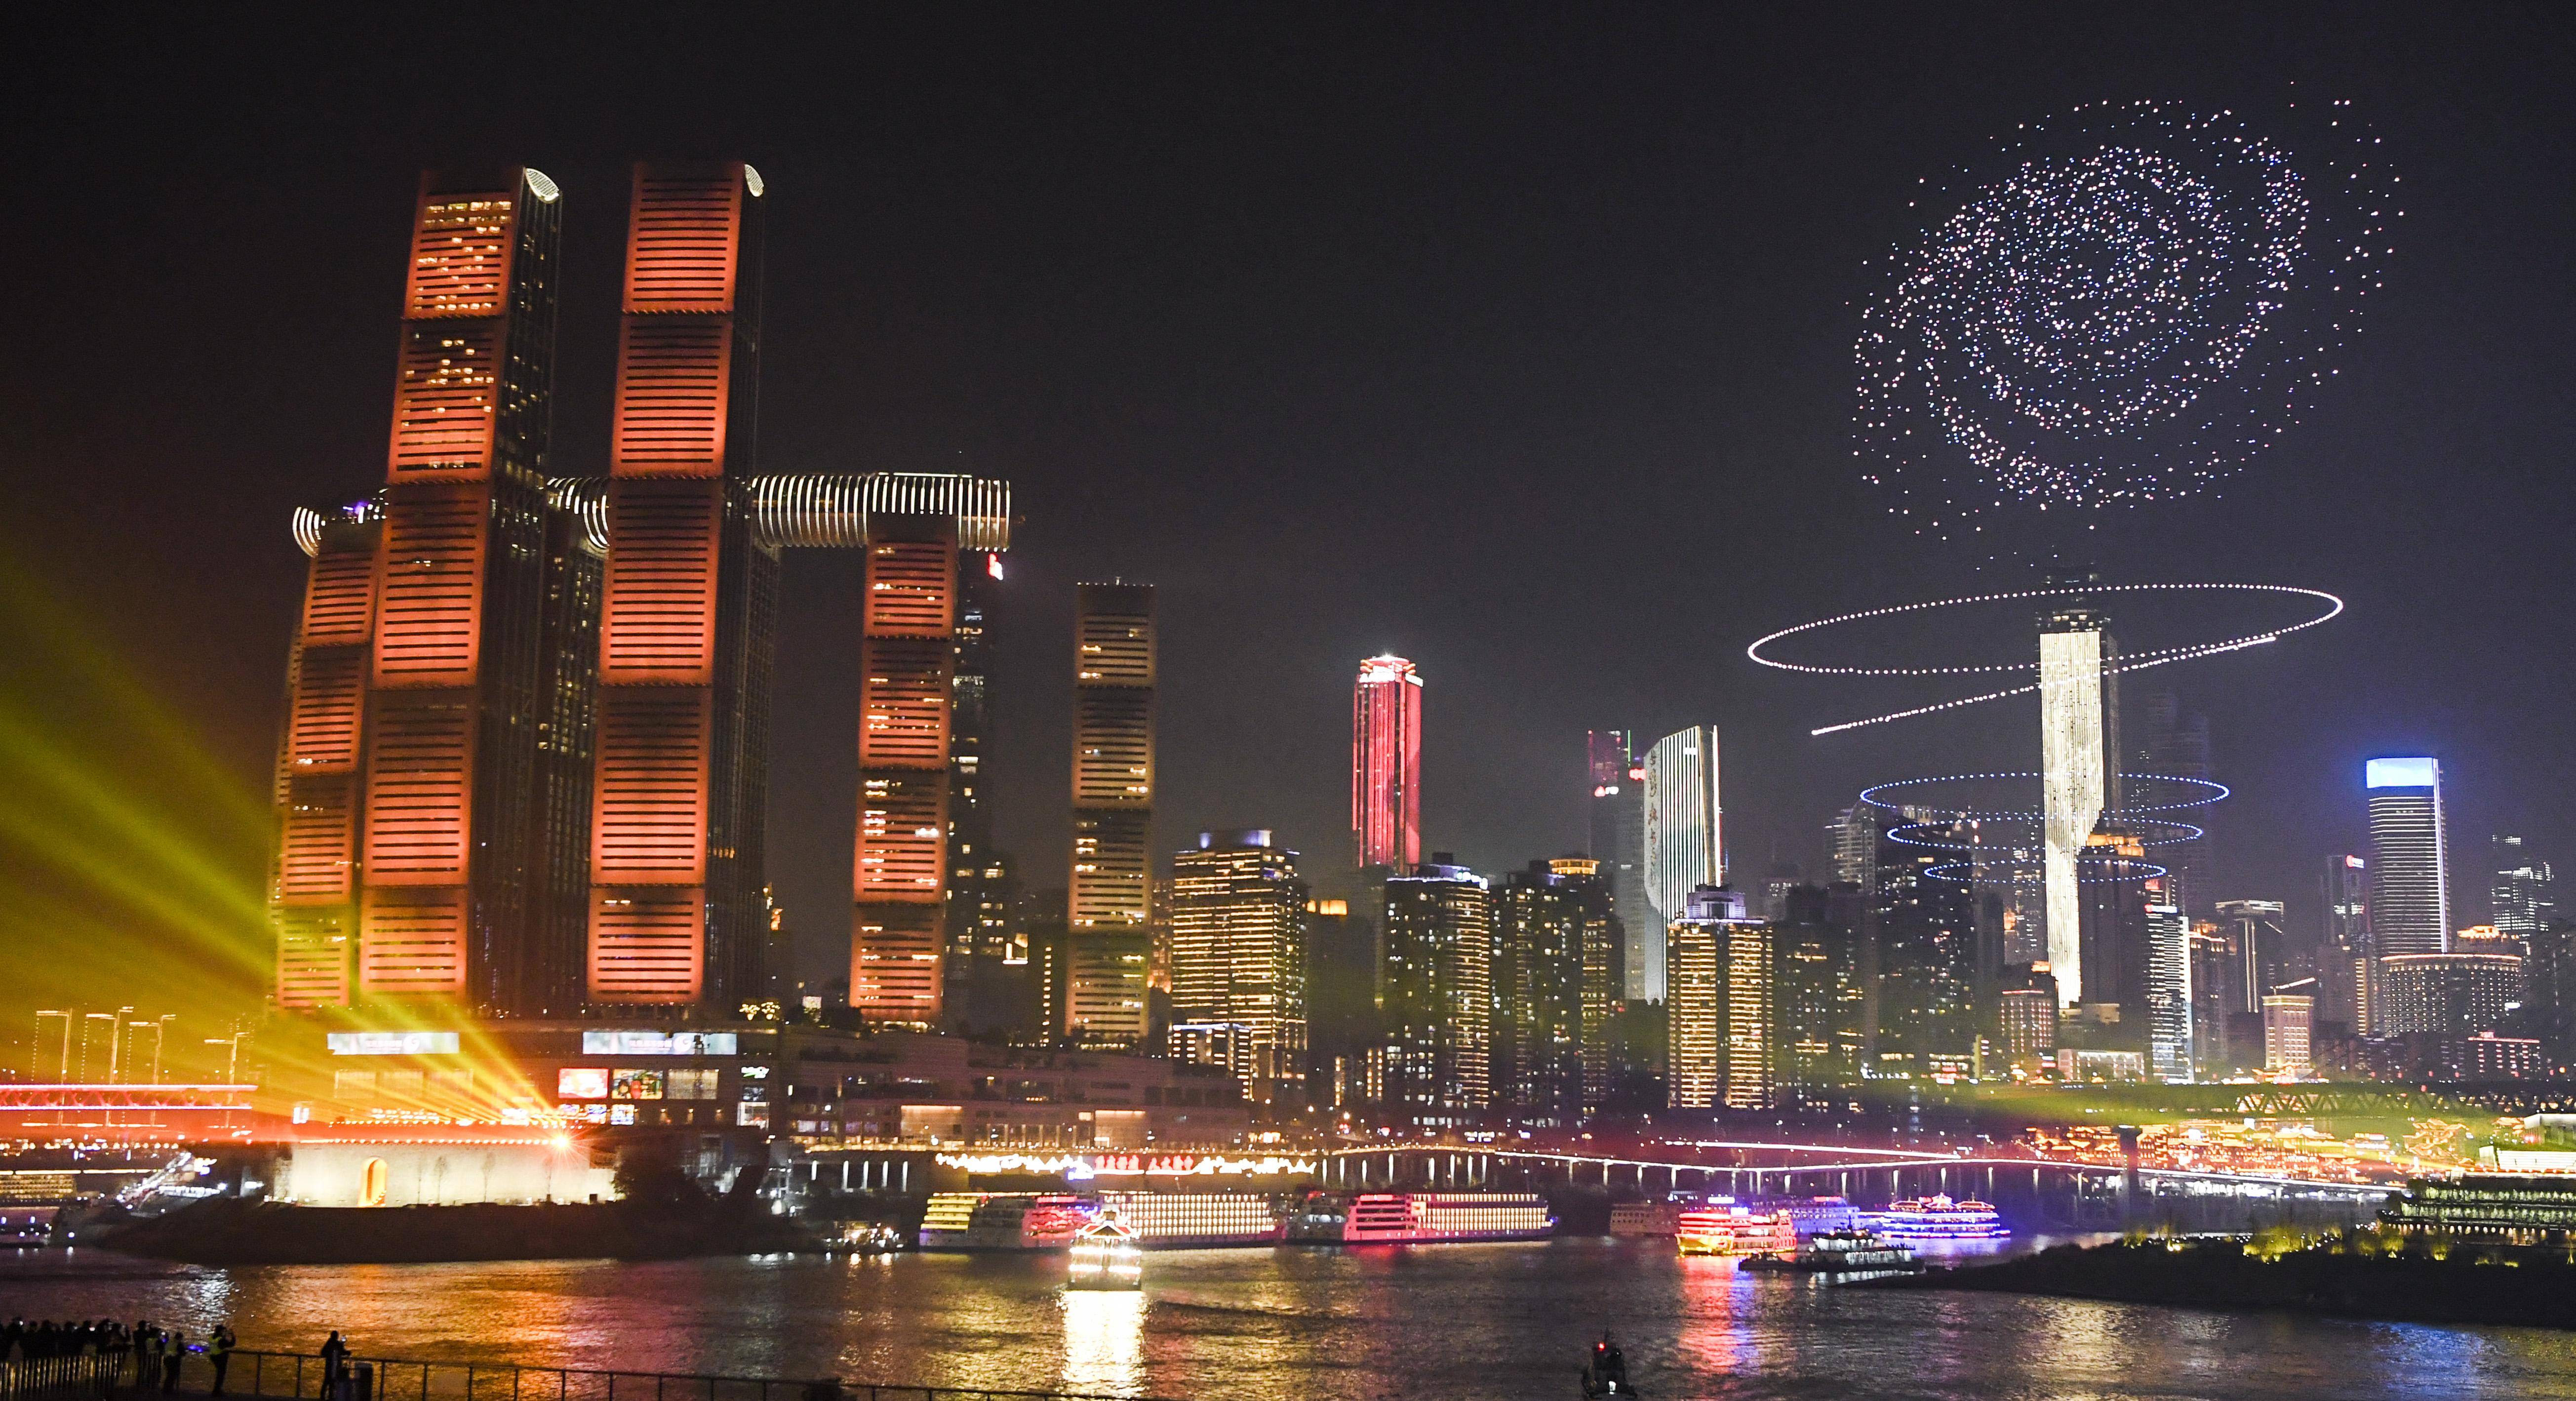 这是2月9日晚拍摄的2024重庆两江四岸夜景灯饰联动展演多媒体灯光秀